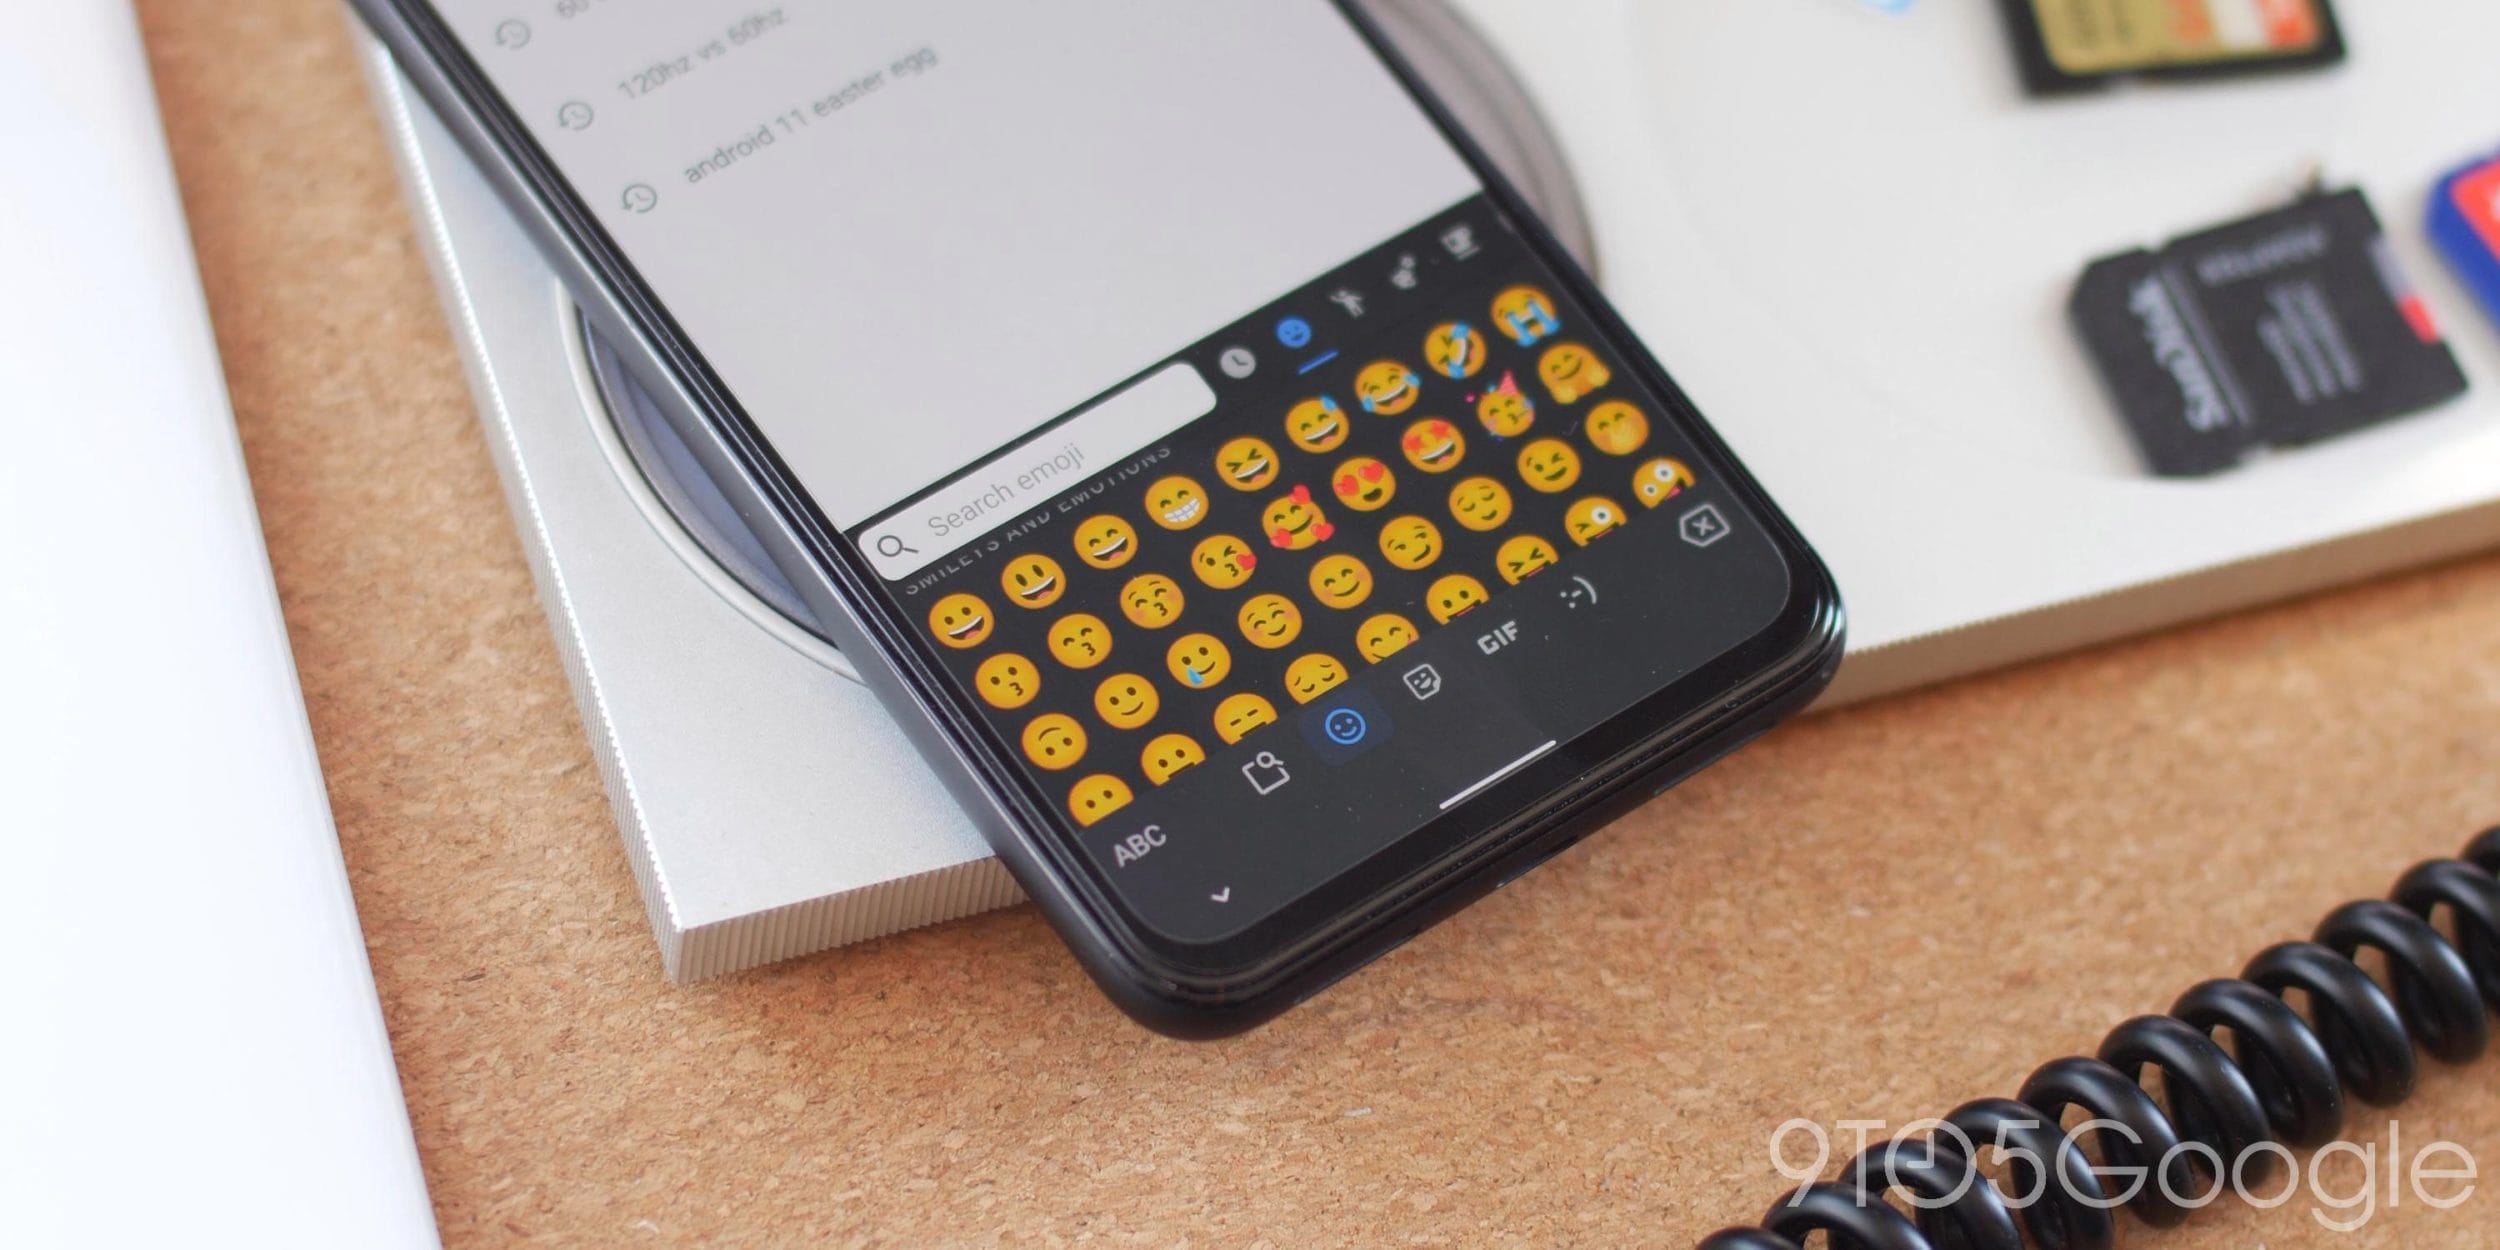 Android 11: Google mostra il design delle nuove emoji di Unicode 13.1 (aggiornato)